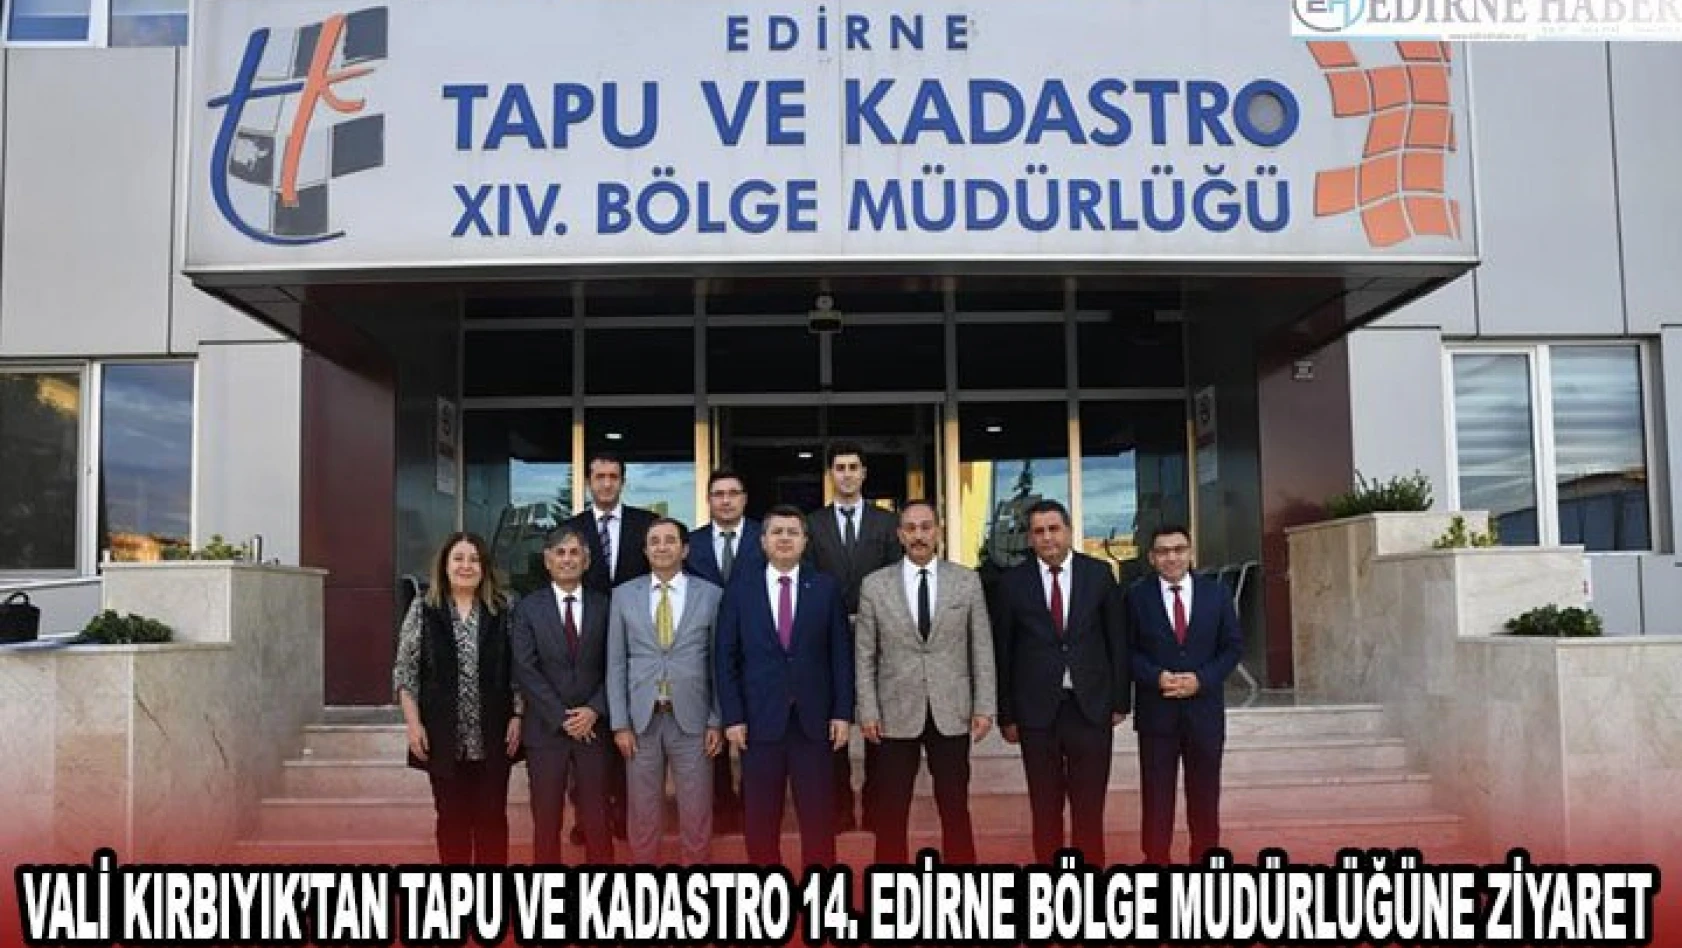 Vali Kırbıyık'tan Tapu ve Kadastro 14. Edirne Bölge Müdürlüğüne ziyaret 